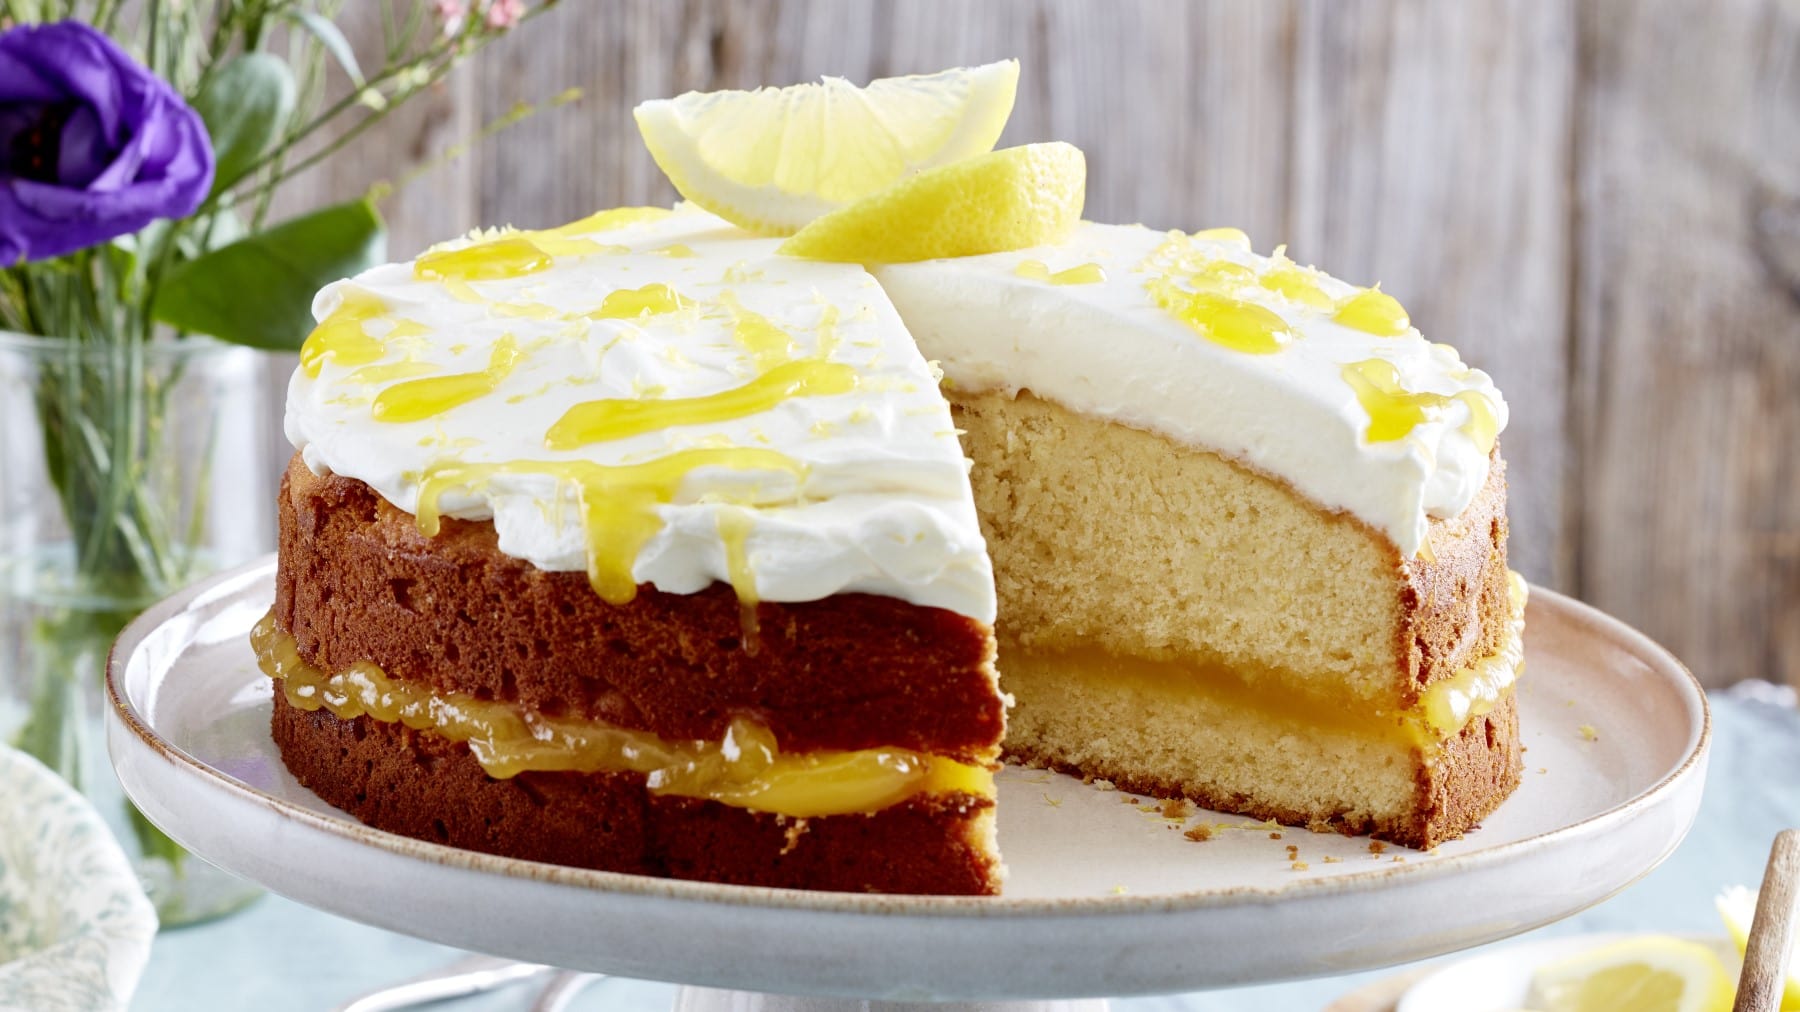 Angeschnittener Lemon-Curd-Kuchen mit Sahne und Zitronenspalten auf einem Servierteller, Holzwand und blaue Blumen im Hintergrund.